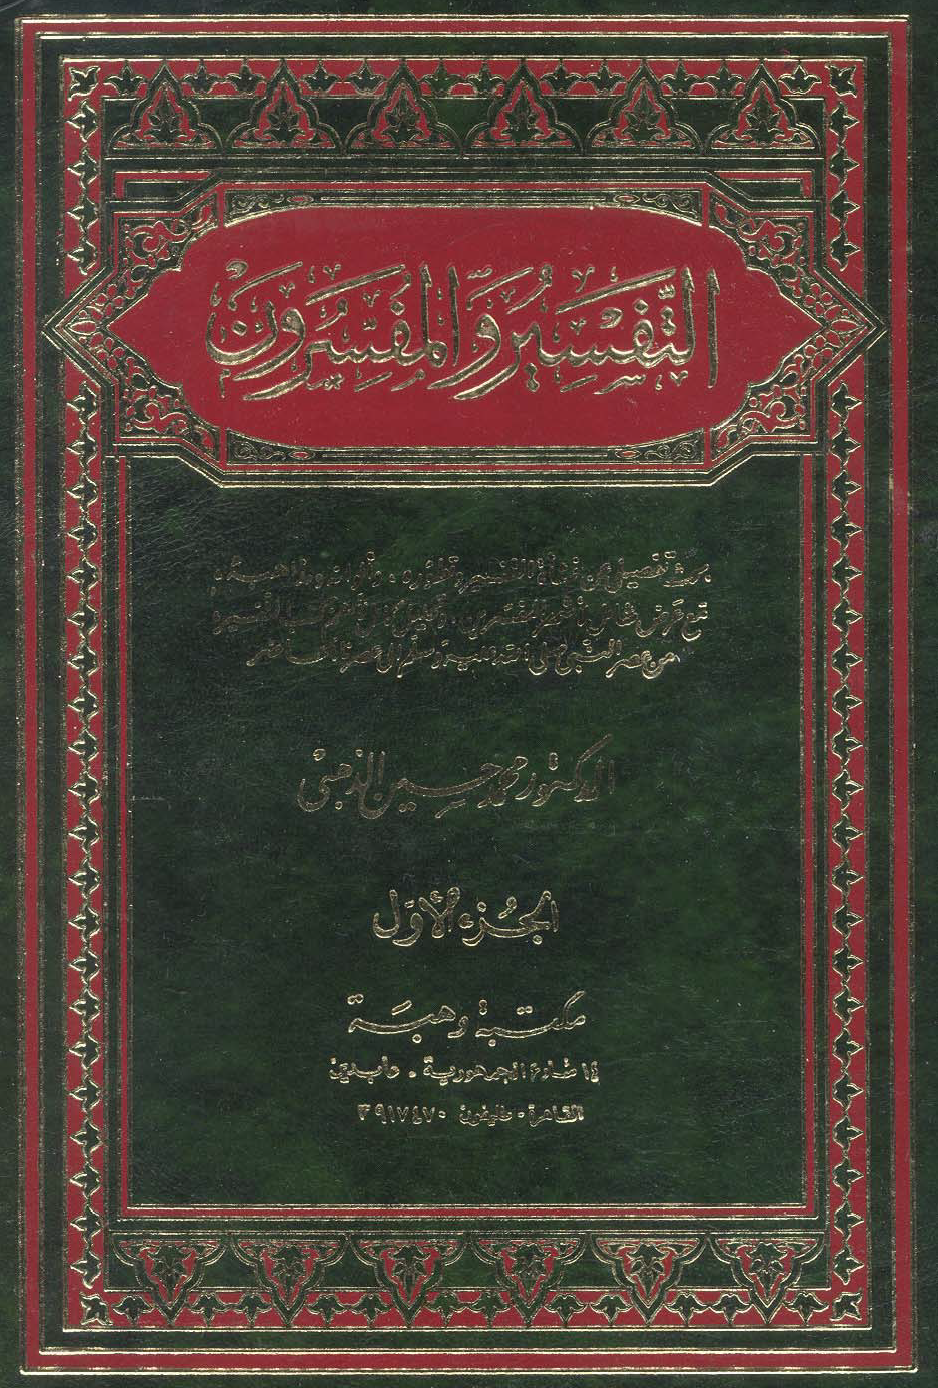 تحميل كتاب التفسير والمفسرون (الذهبي) لـِ: الدكتور محمد حسين الذهبي (ت 1333)